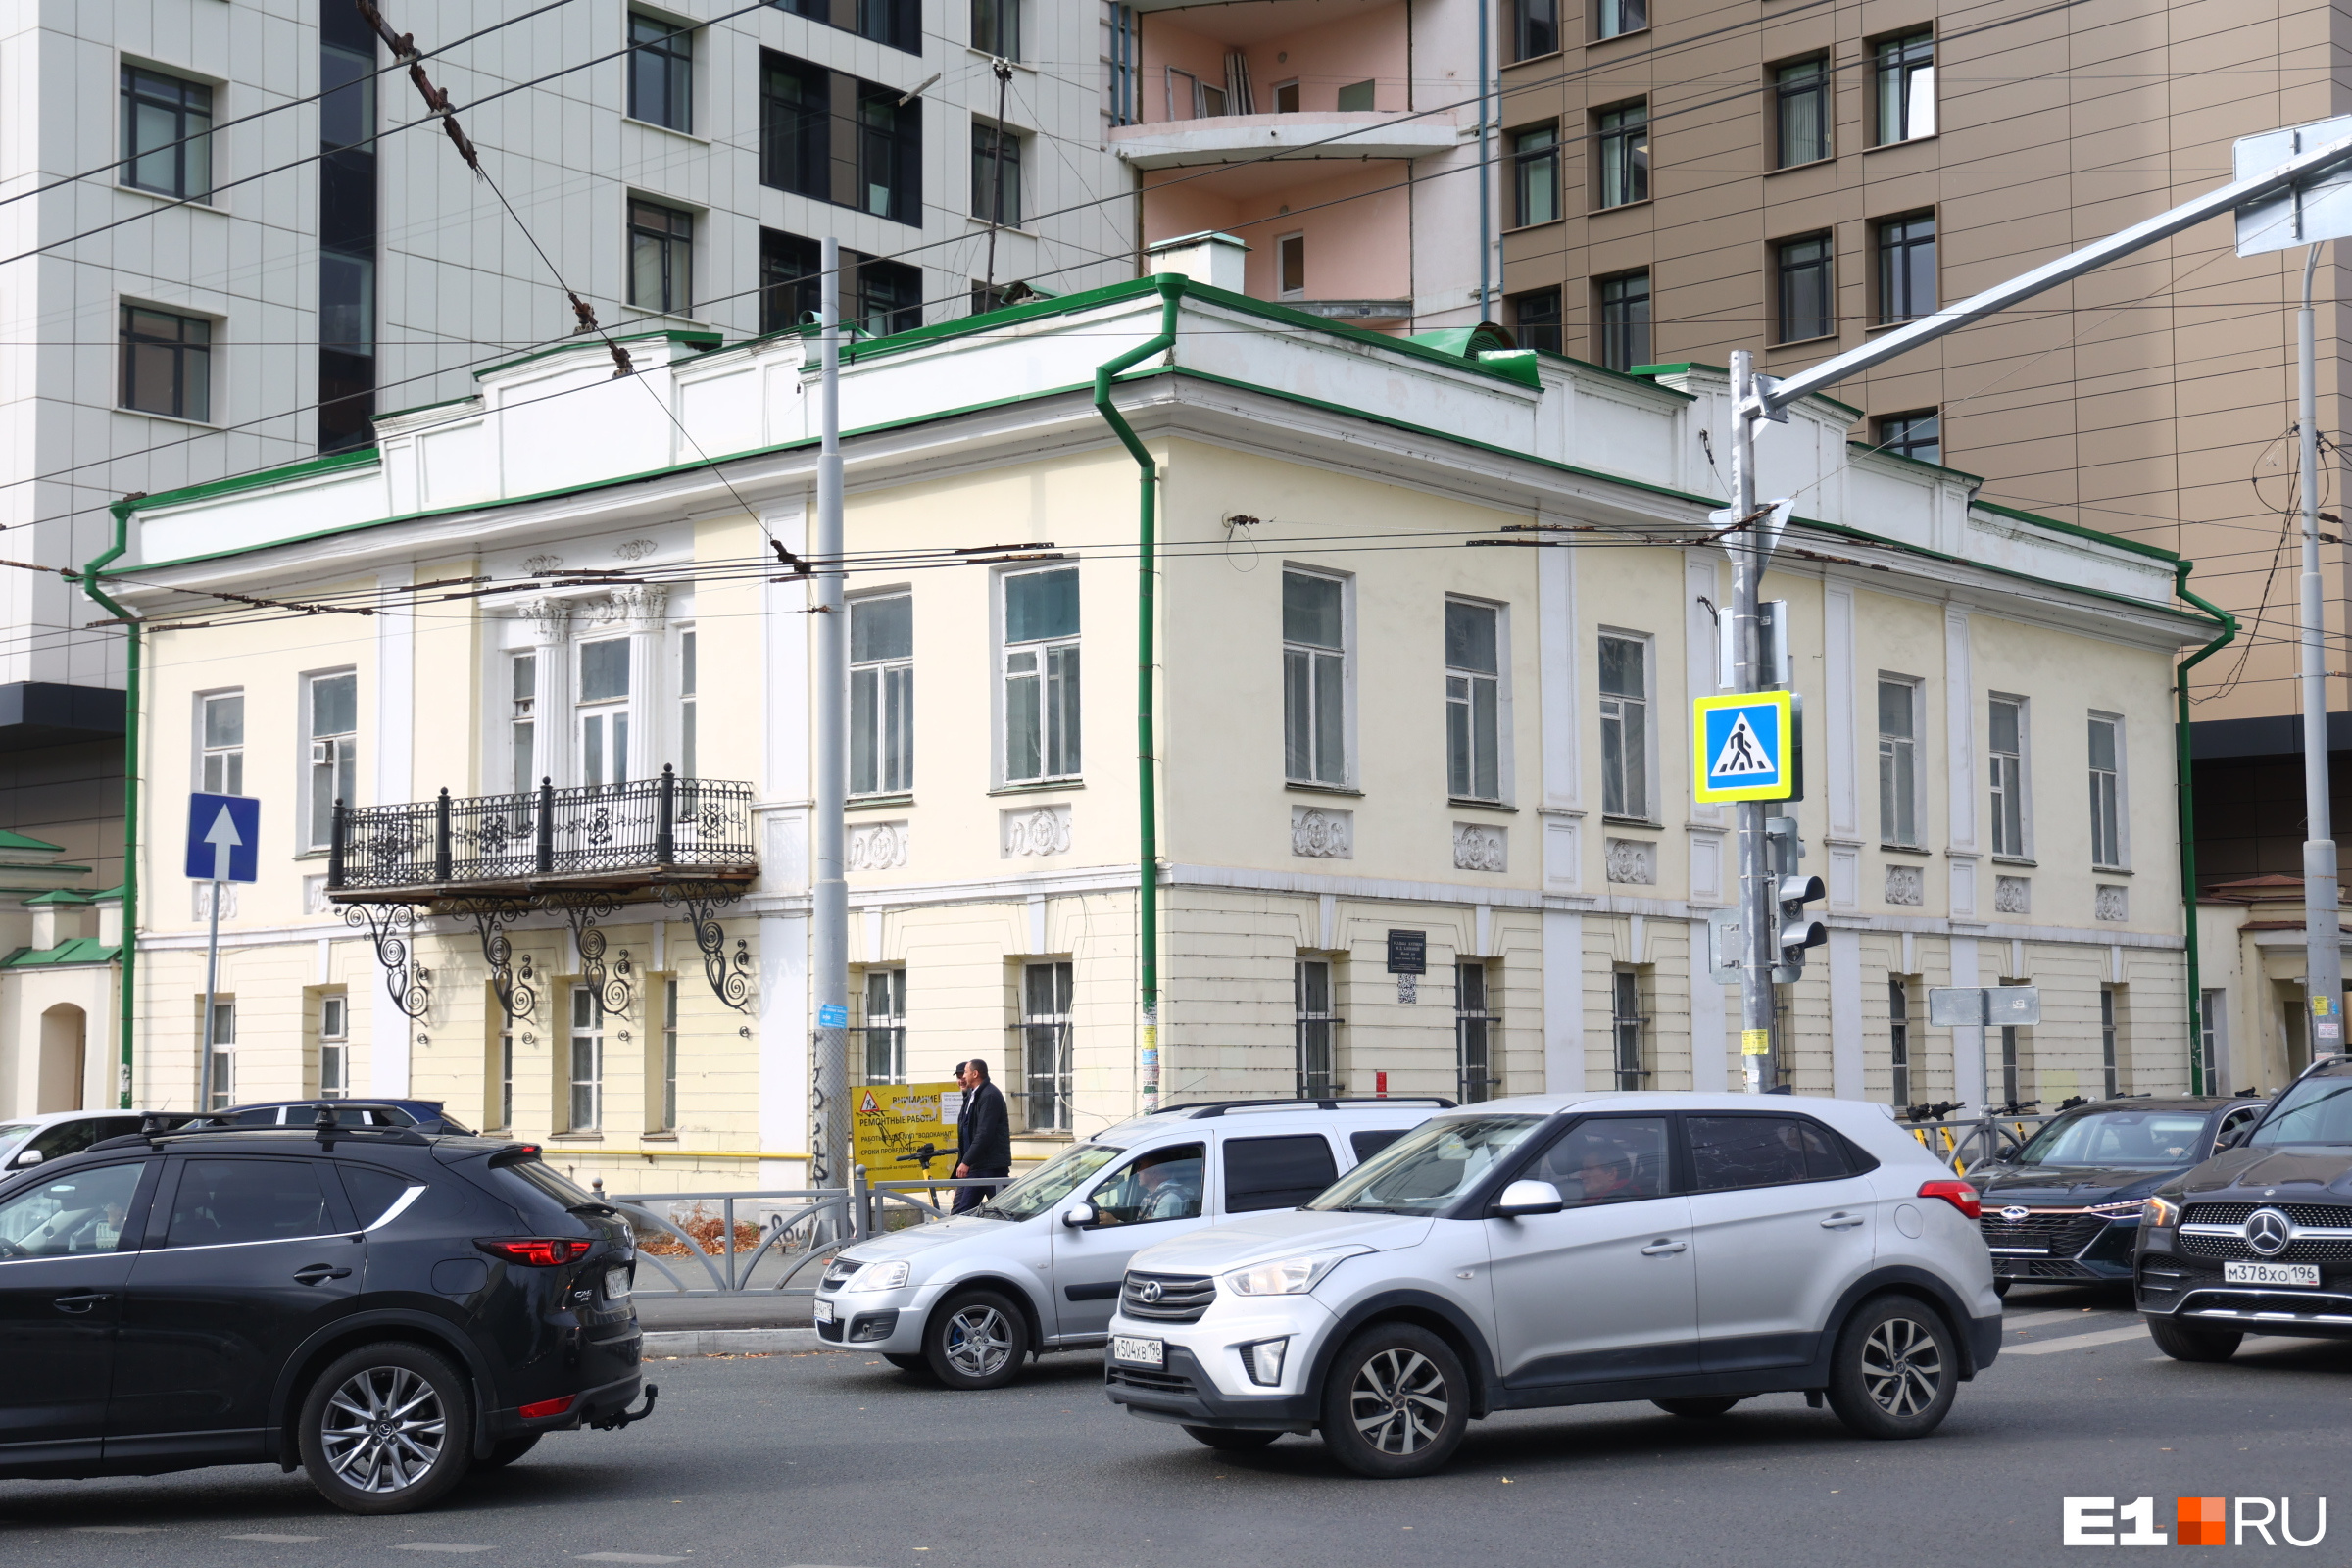 Старинную усадьбу в центре Екатеринбурга продали фирме энергетического олигарха. Что теперь там будет?